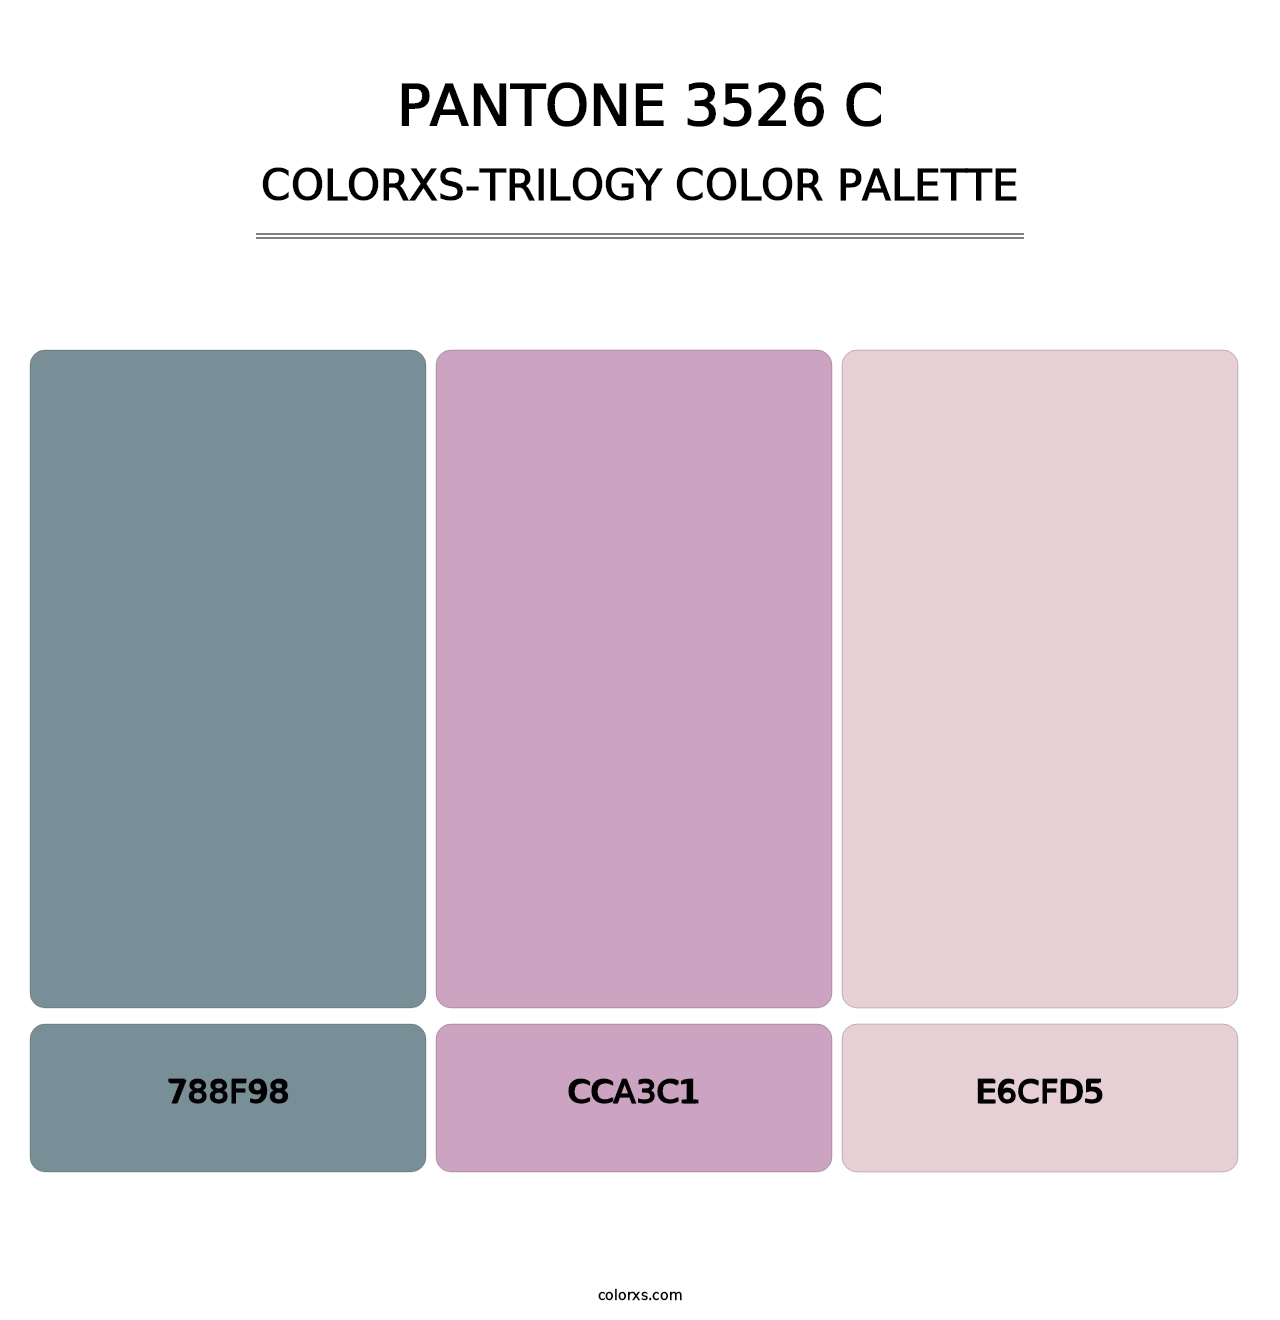 PANTONE 3526 C - Colorxs Trilogy Palette